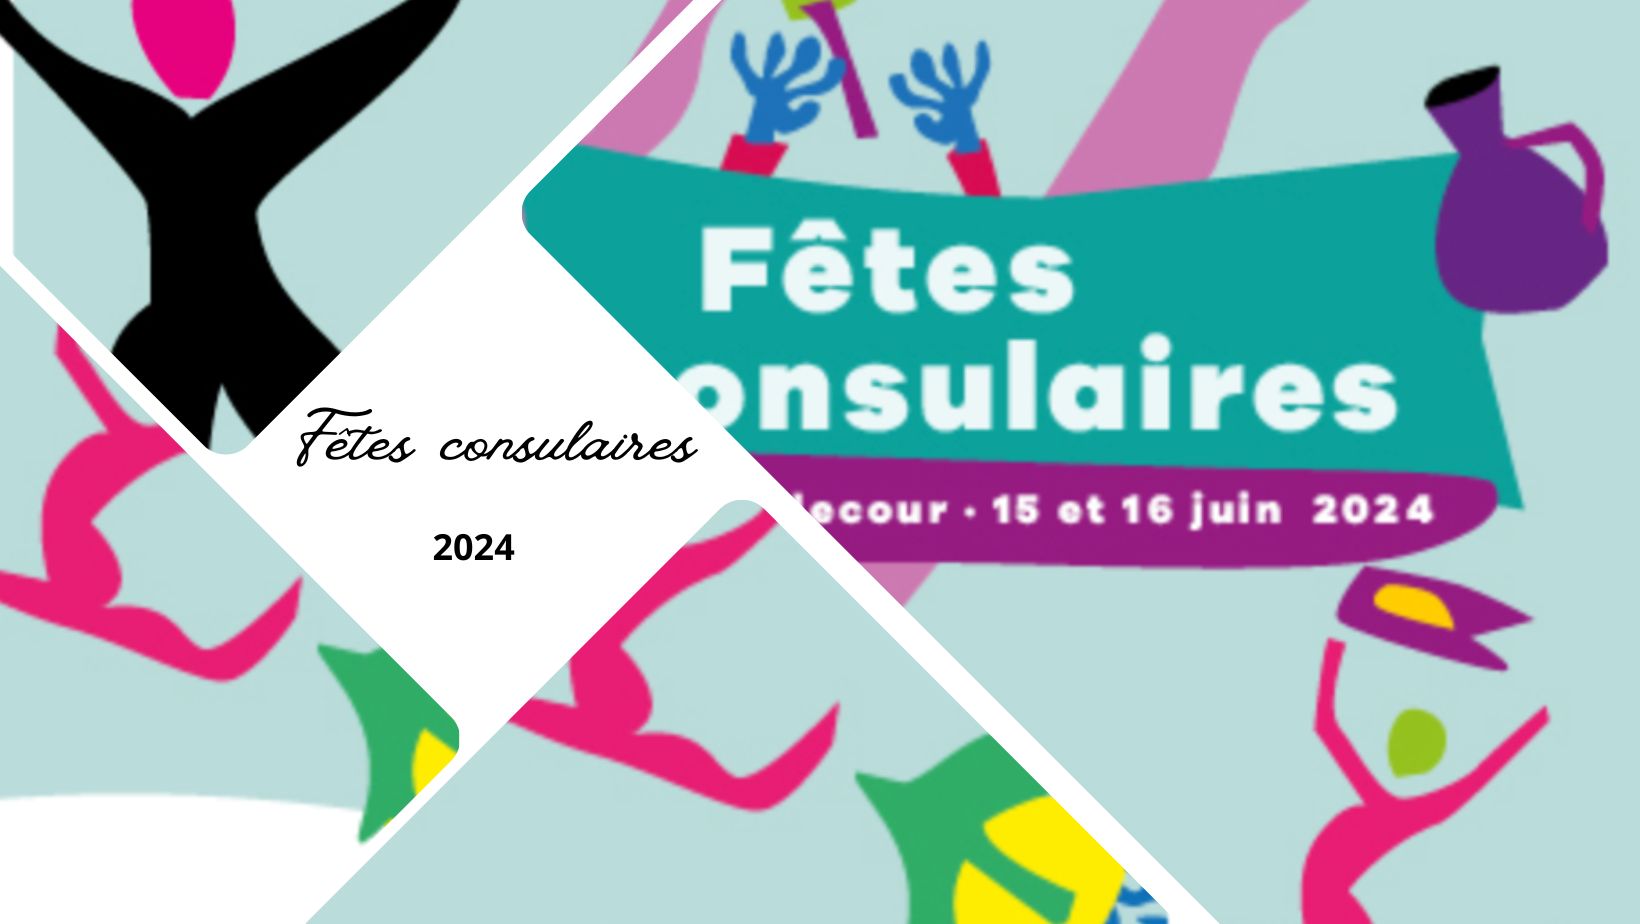 Fêtes consulaires 2024 à Lyon : une édition qui fait honneur à l'artisanat et aux savoir-faire